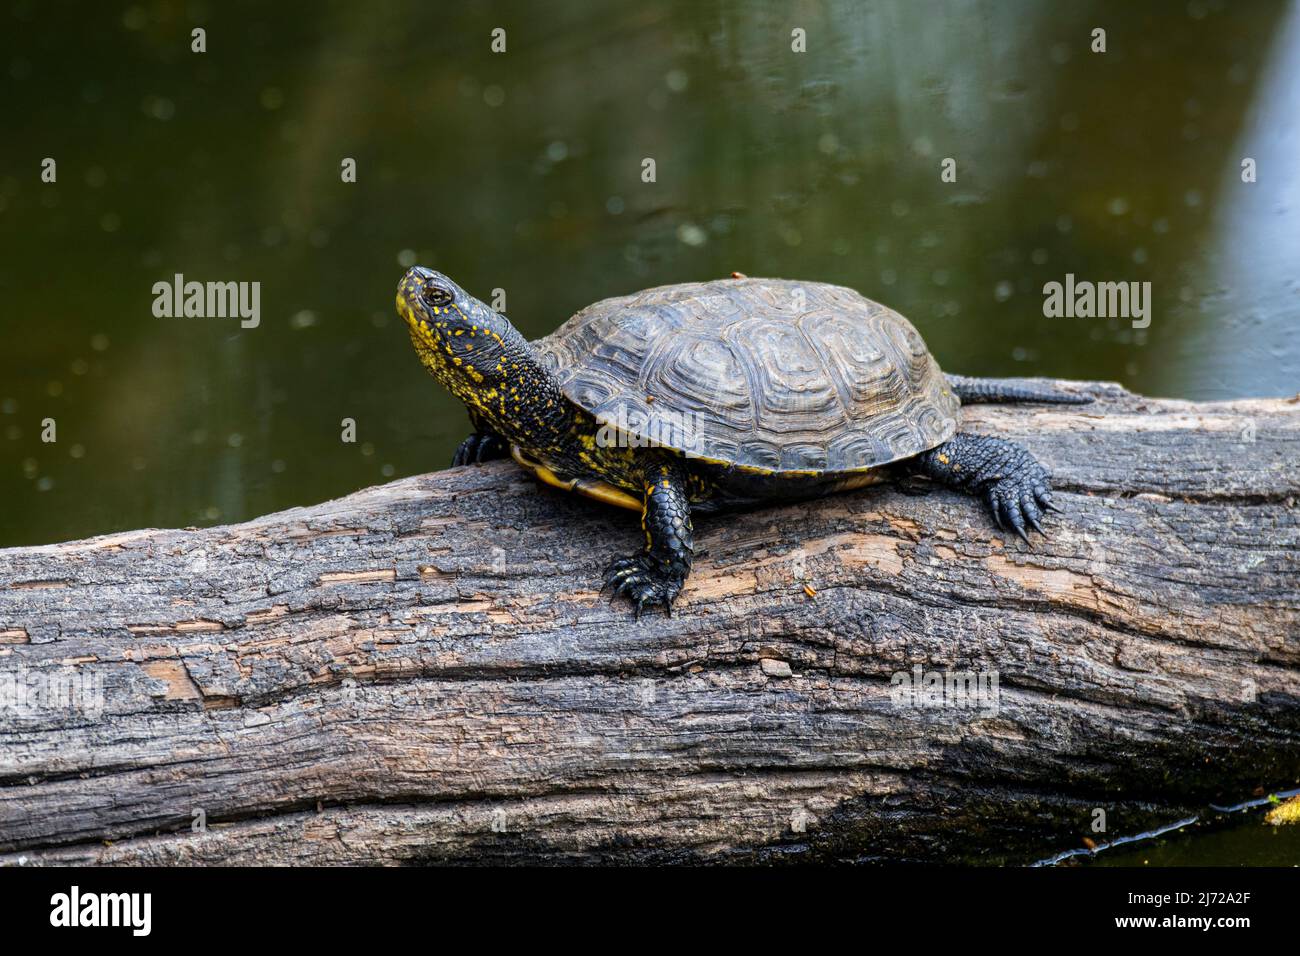 Tortue de l'étang européen / terrapin de l'étang européen / tortue de l'étang européen (Emys orbicularis / Testudo orbicularis) se prélassant au soleil sur l'arbre tombé trun Banque D'Images